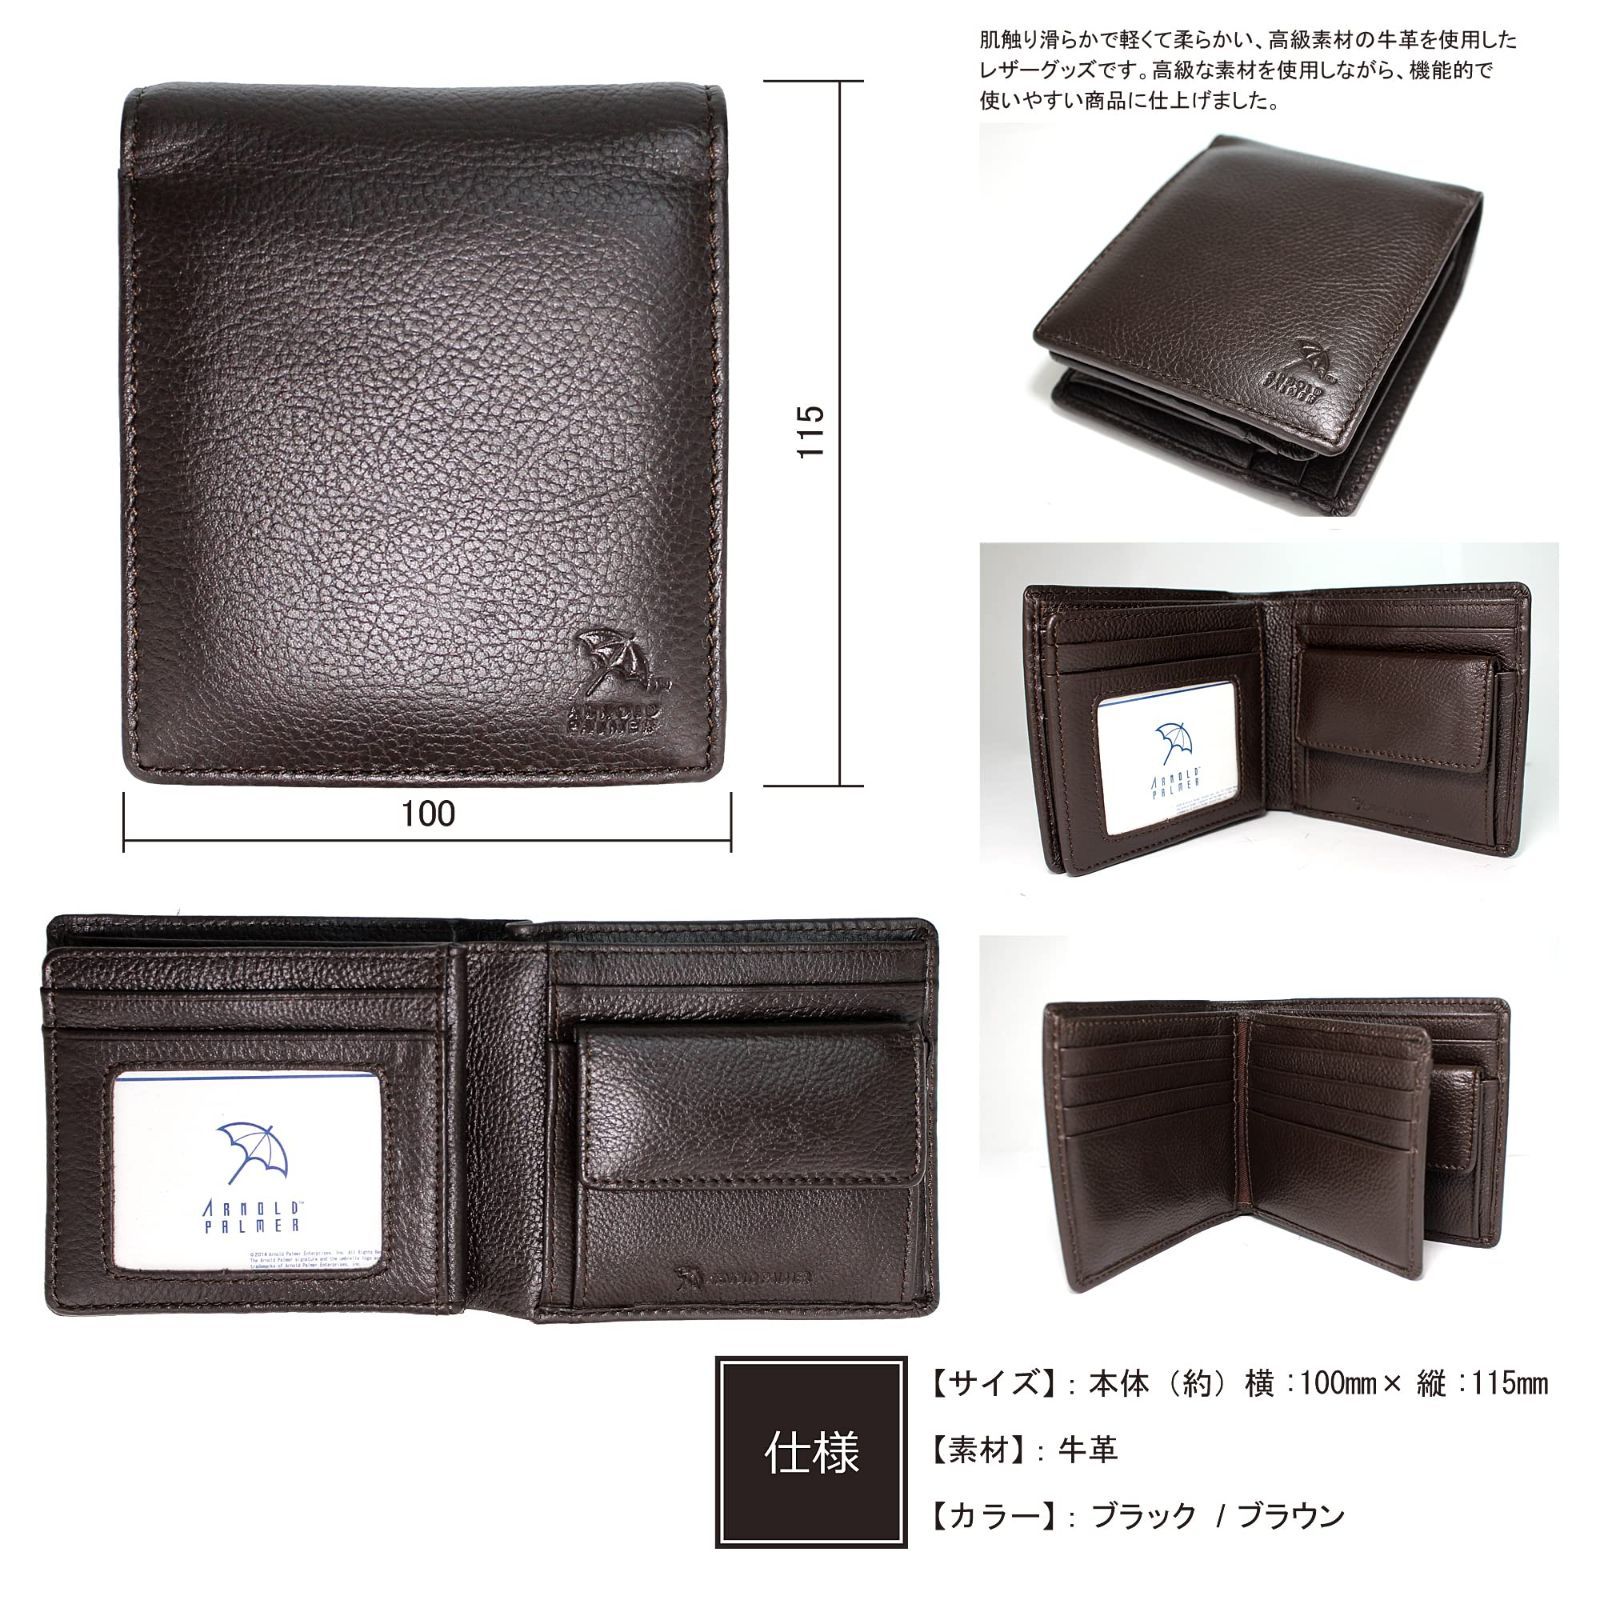 【色: black】アーノルドパーマー 財布 メンズ 二つ折り財布 多機能 中べ